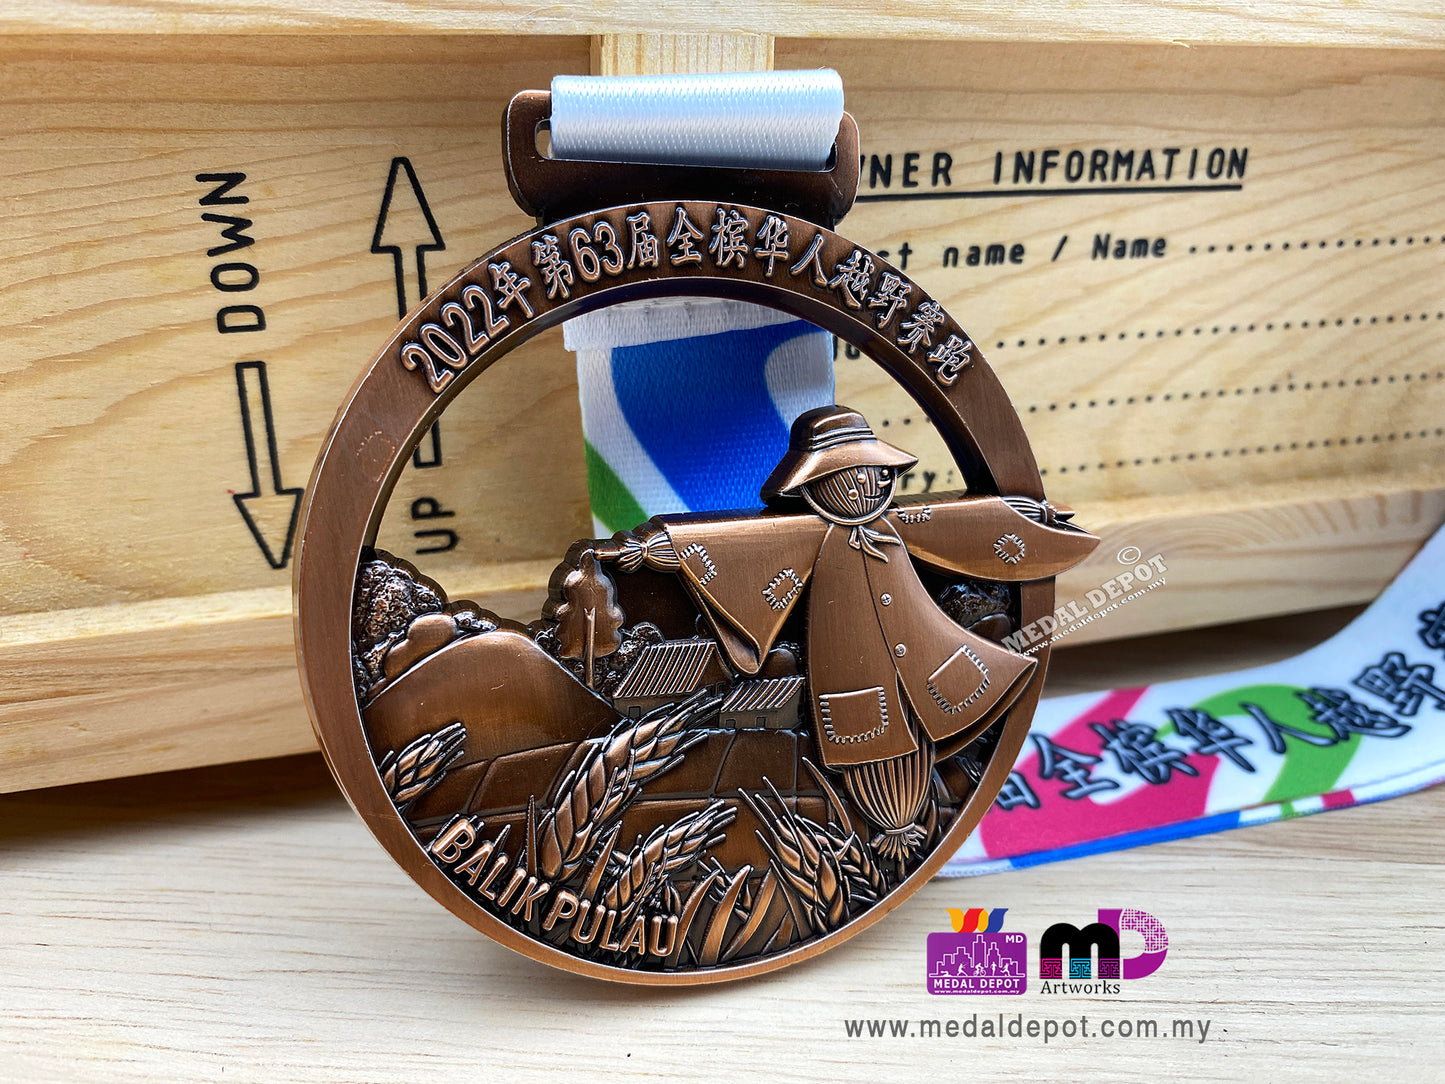 Chung Ling Cross Country Run 2022 medal